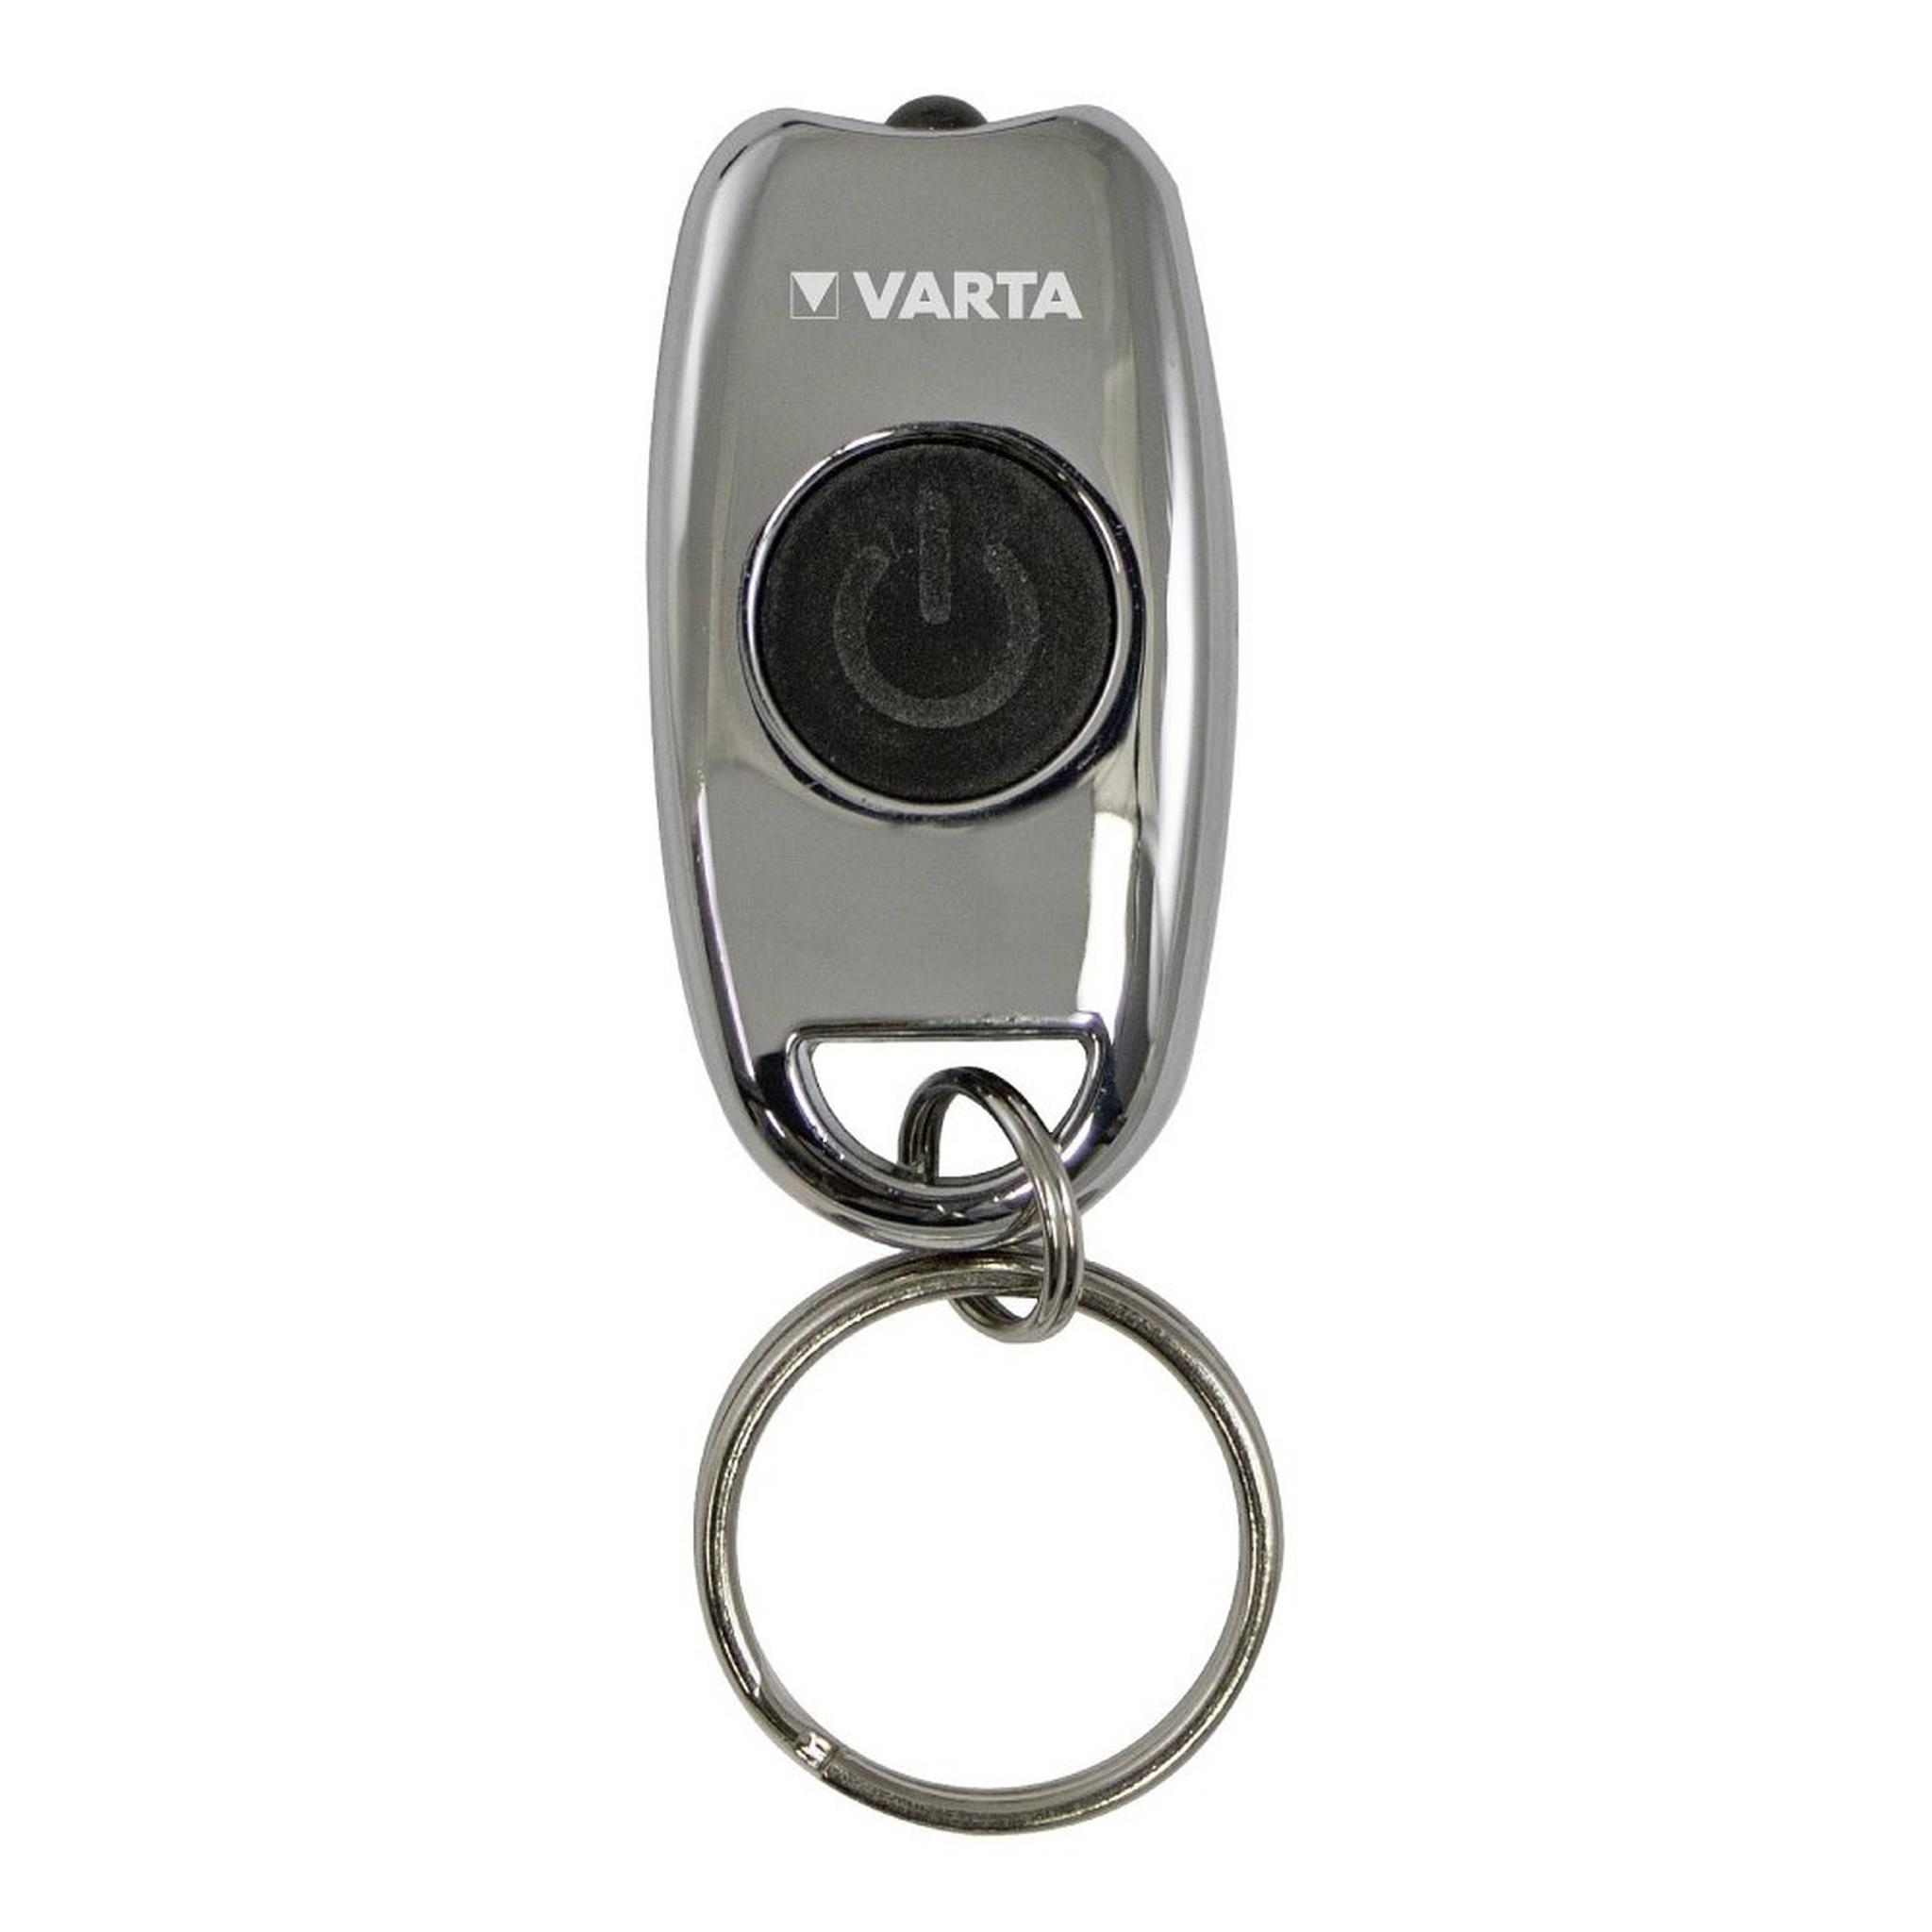 Varta Metal Key Chain Light (16603101401)